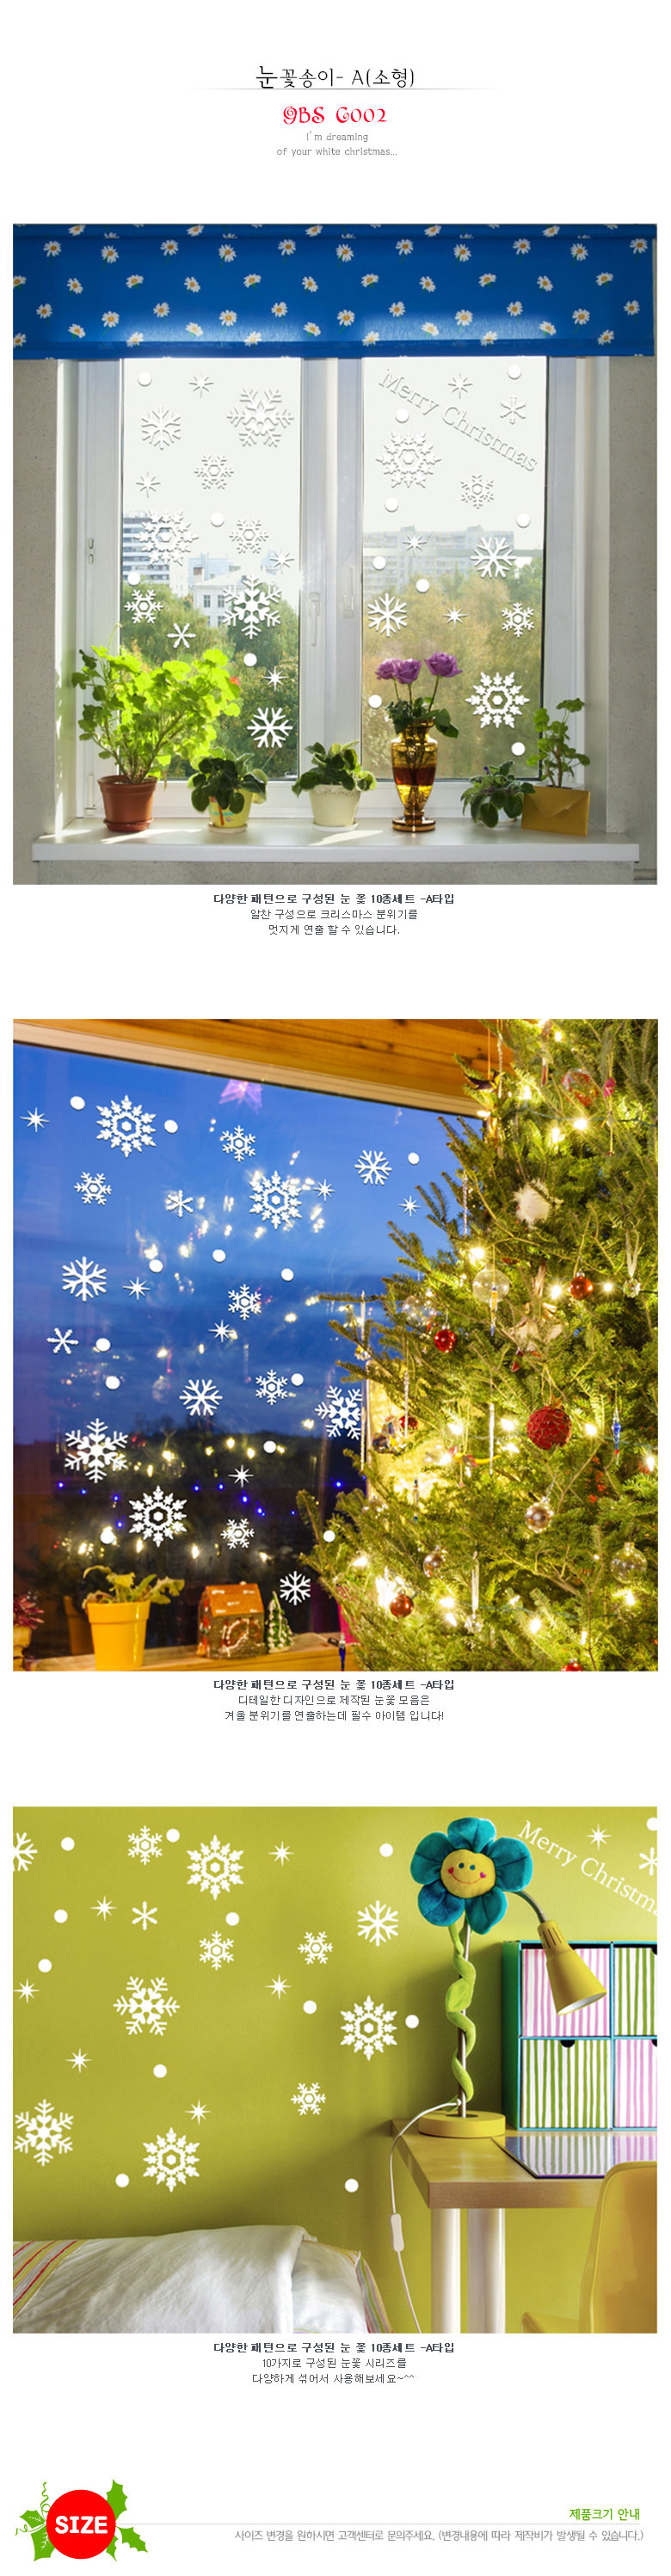 그래픽 스티커 눈꽃 (GBS-C002)  크리스마스 눈꽃송이(A) 7,760원 - 데코사랑 인테리어, 월데코/벽지/장식, 월데코스티커, 계절/시즌 바보사랑 그래픽 스티커 눈꽃 (GBS-C002)  크리스마스 눈꽃송이(A) 7,760원 - 데코사랑 인테리어, 월데코/벽지/장식, 월데코스티커, 계절/시즌 바보사랑